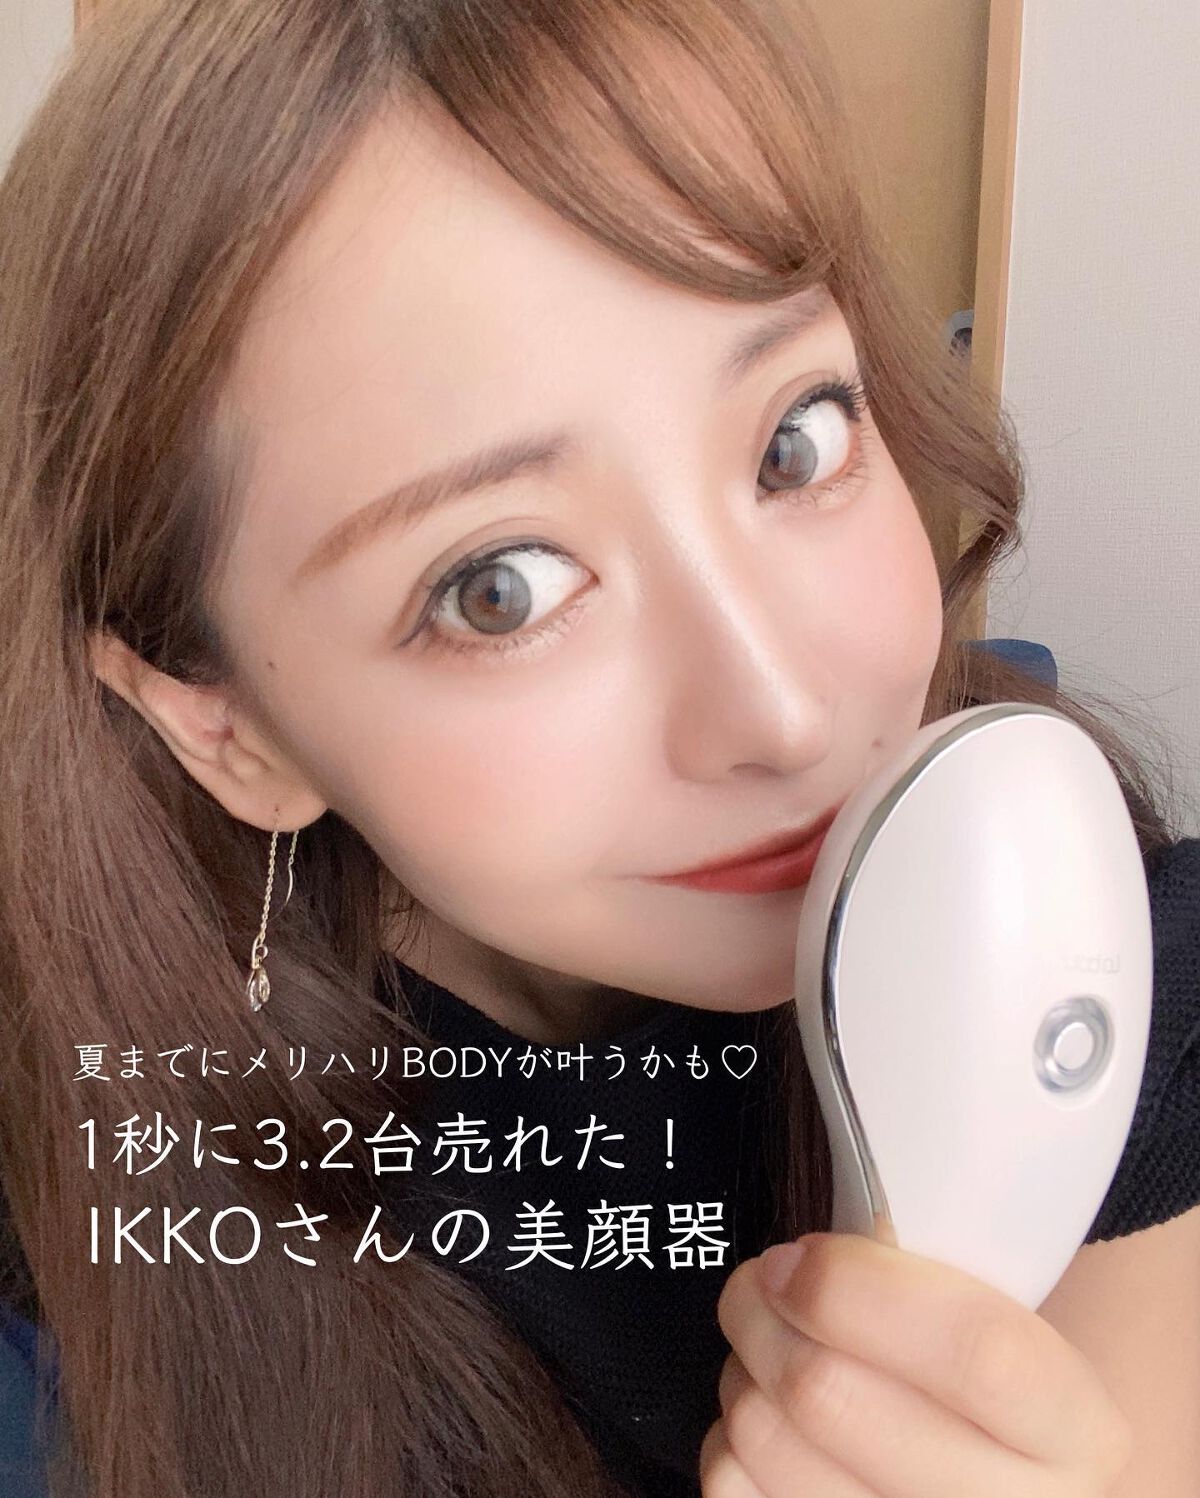 MEラボン｜MEの口コミ - IKKOさんプロデュースの美顔器 by Siratama